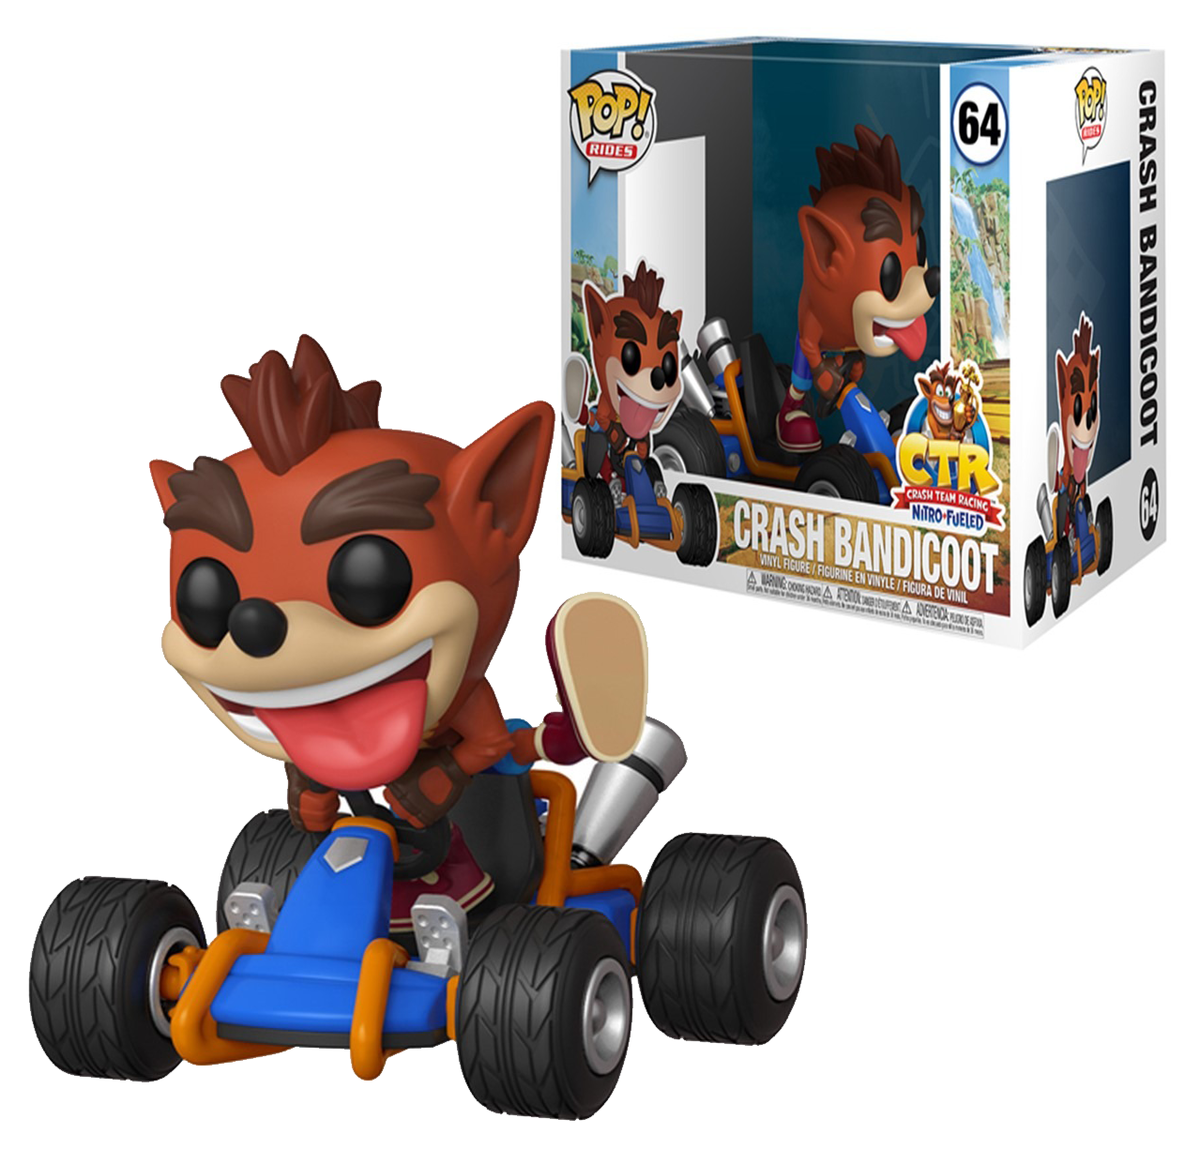 64 Crash Team Racing Rides Vinyl Figure Crash Bandicoot Funko POP!